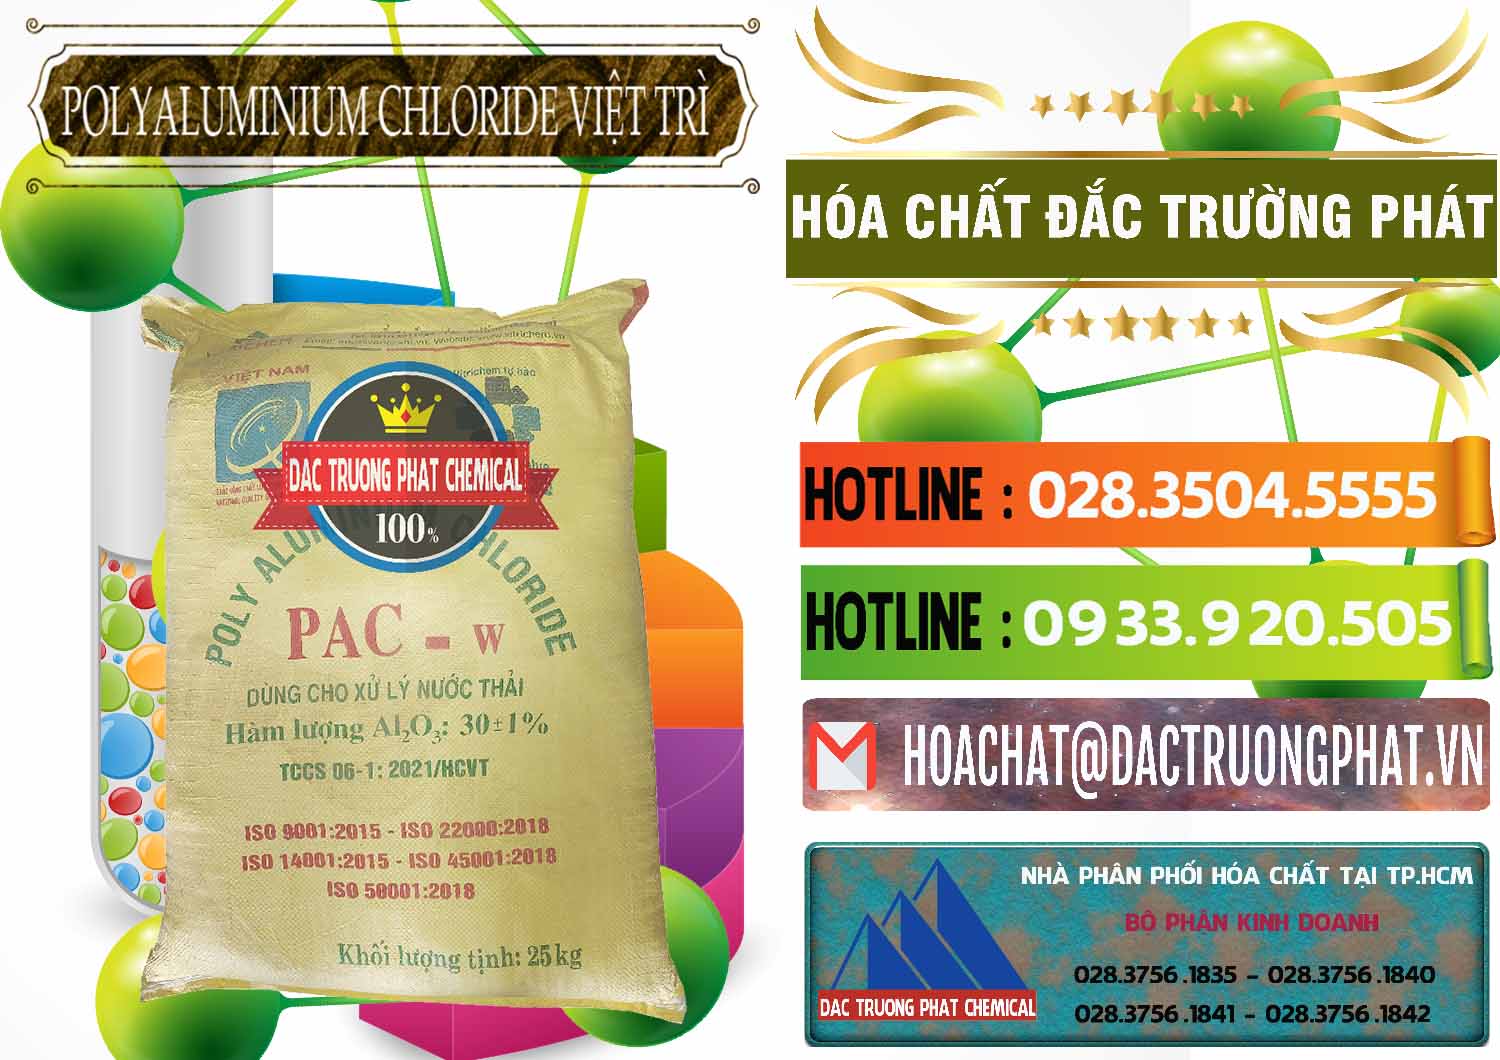 Công ty chuyên bán ( cung cấp ) PAC - Polyaluminium Chloride Việt Trì Việt Nam - 0487 - Nhà cung cấp - kinh doanh hóa chất tại TP.HCM - cungcaphoachat.com.vn